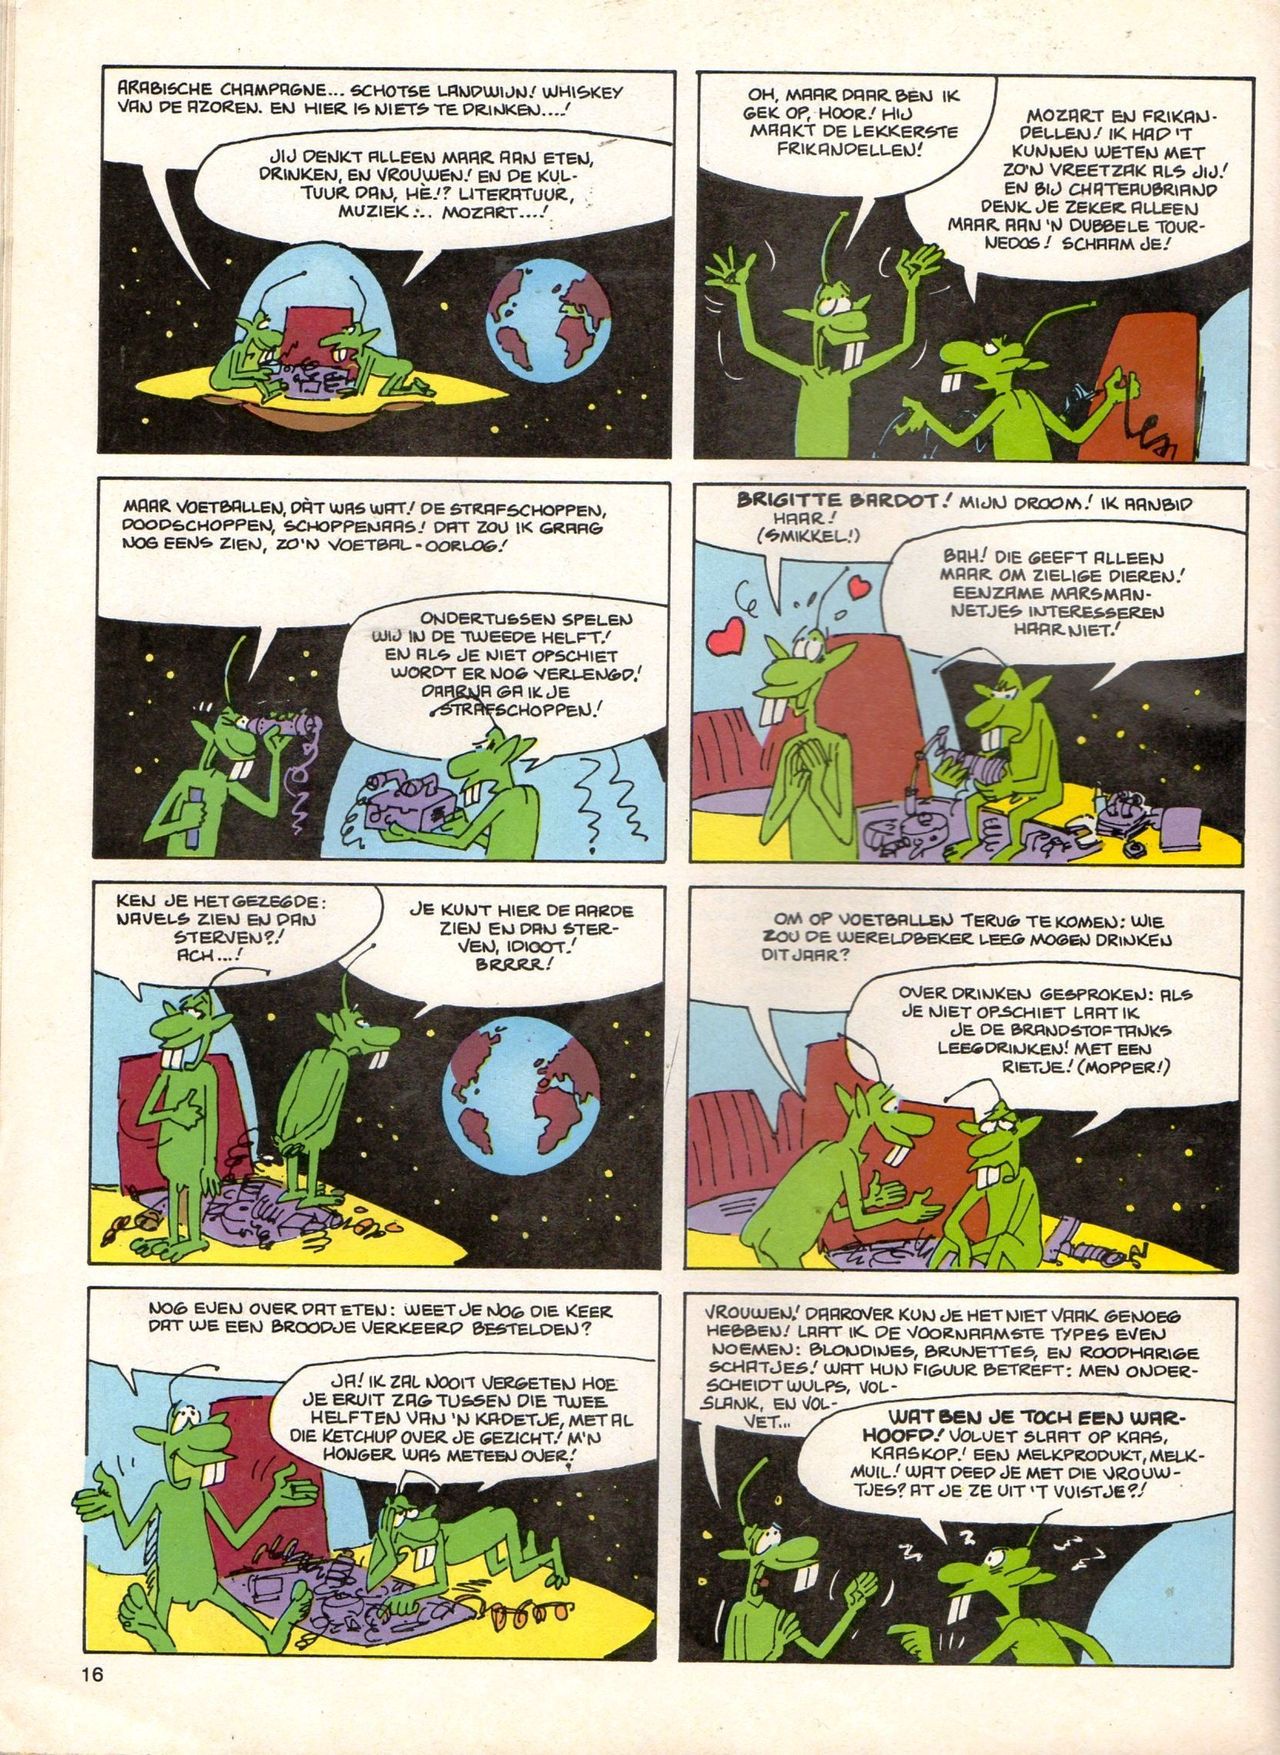 Het Is Groen En Het.. - 04 - Mag Ik Die Ballen.. OH, PARDON! (Dutch) Een oude humoristische serie van Pat Mallet 16